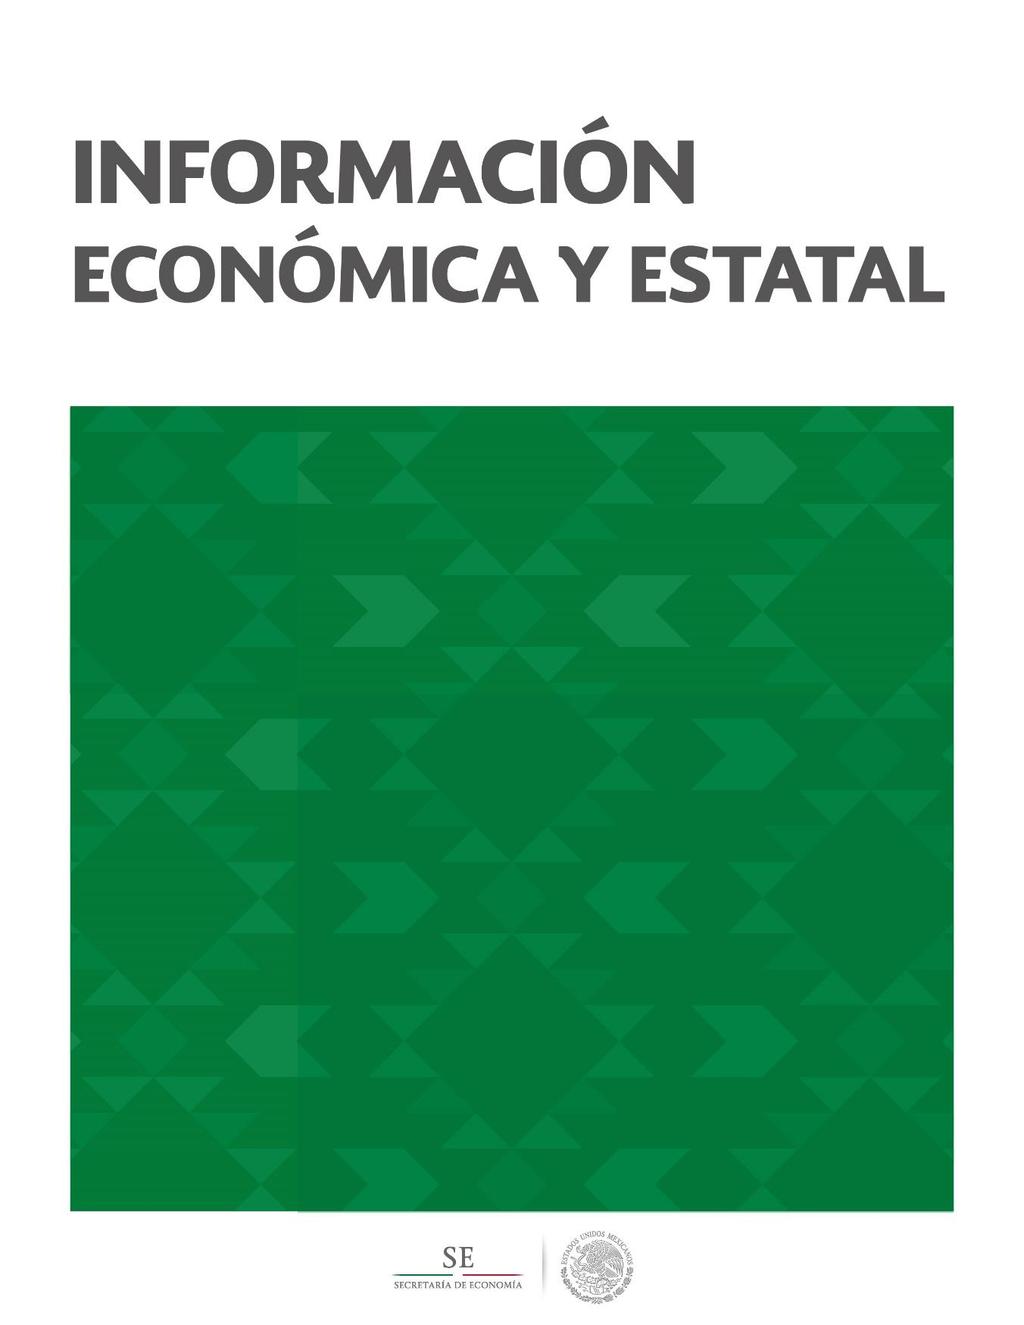 Tabasco Contenido Geografía y Población 2 Actividad Económica 5 Sector